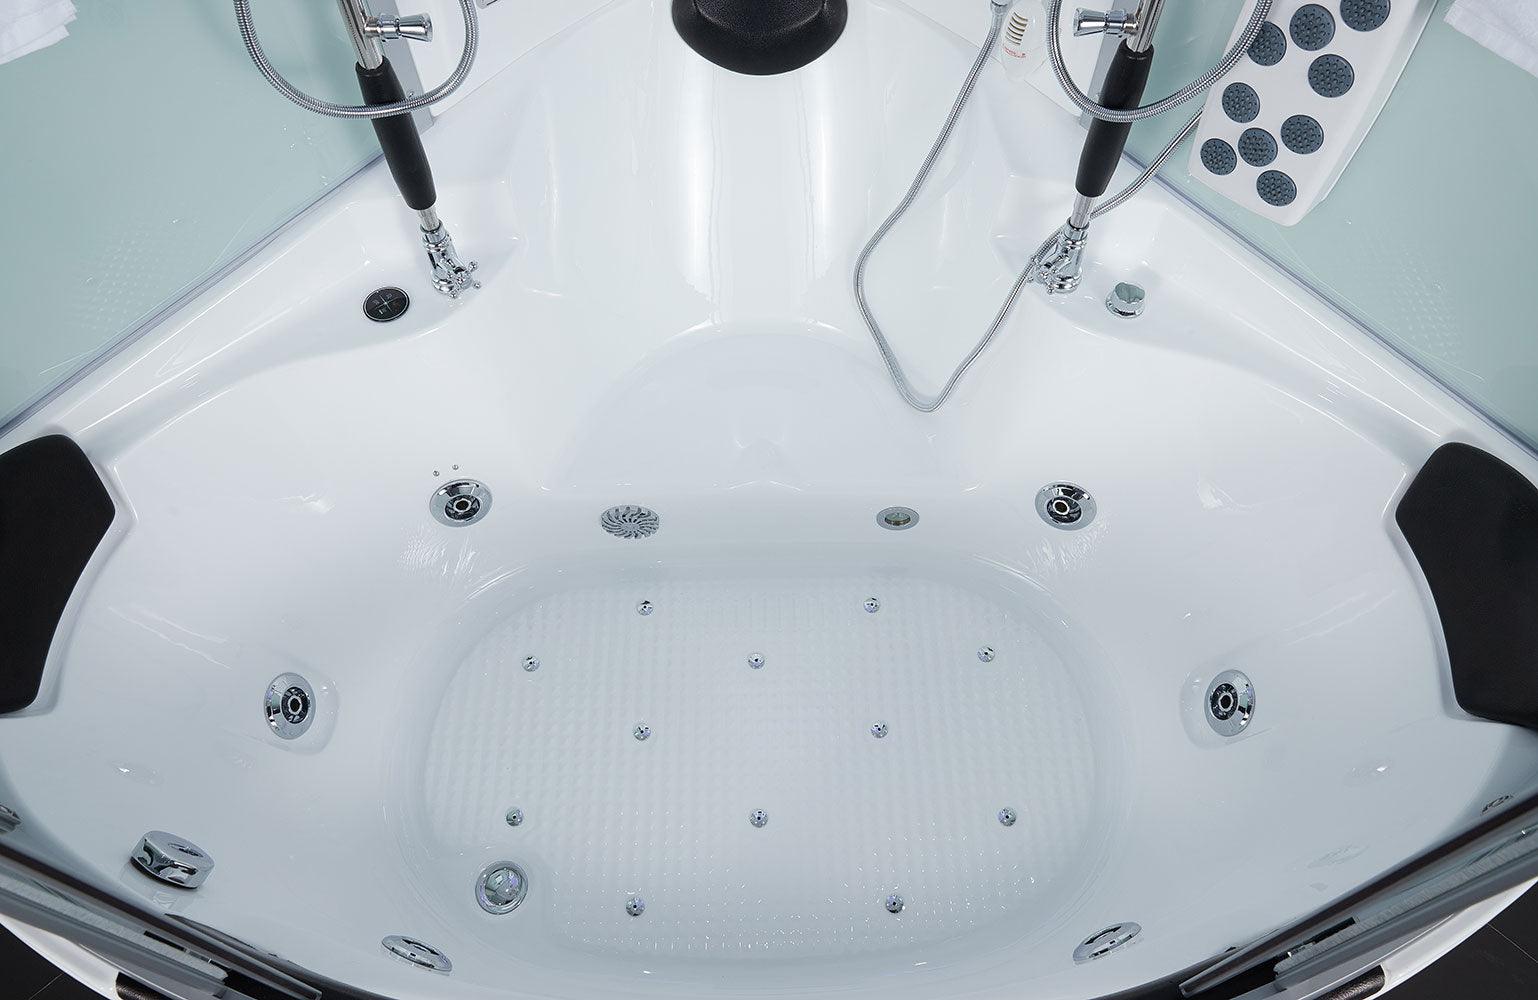 Maya Bath Platinum Superior Steam Shower & Whirlpool Bathtub with TV and 16 jets 64 x 64 x 88 in - Bathroom Design Center